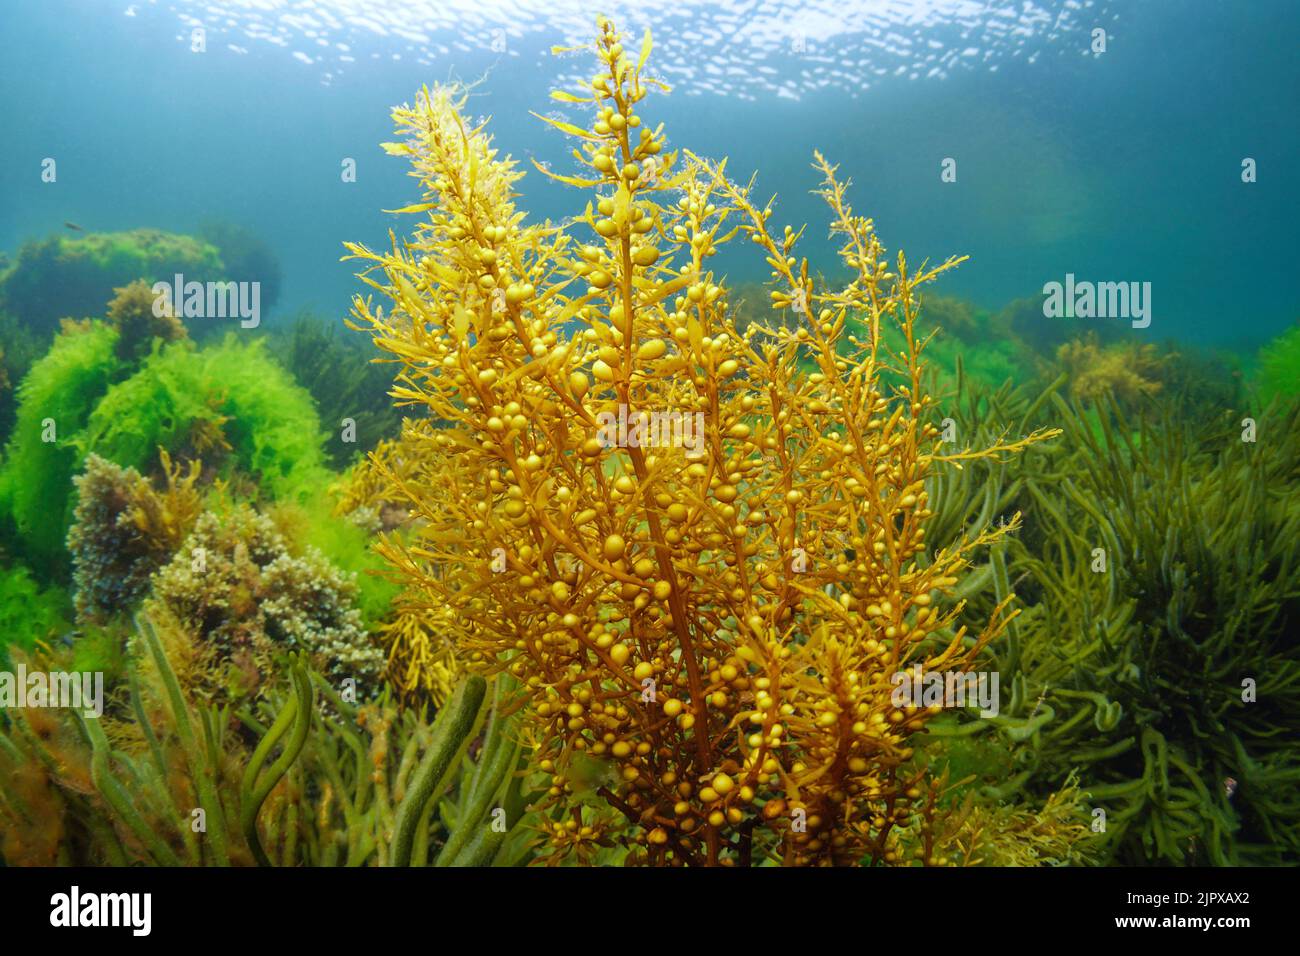 Japanese wireweed brown alga, Sargassum muticum, underwater in the Atlantic ocean, Spain Stock Photo